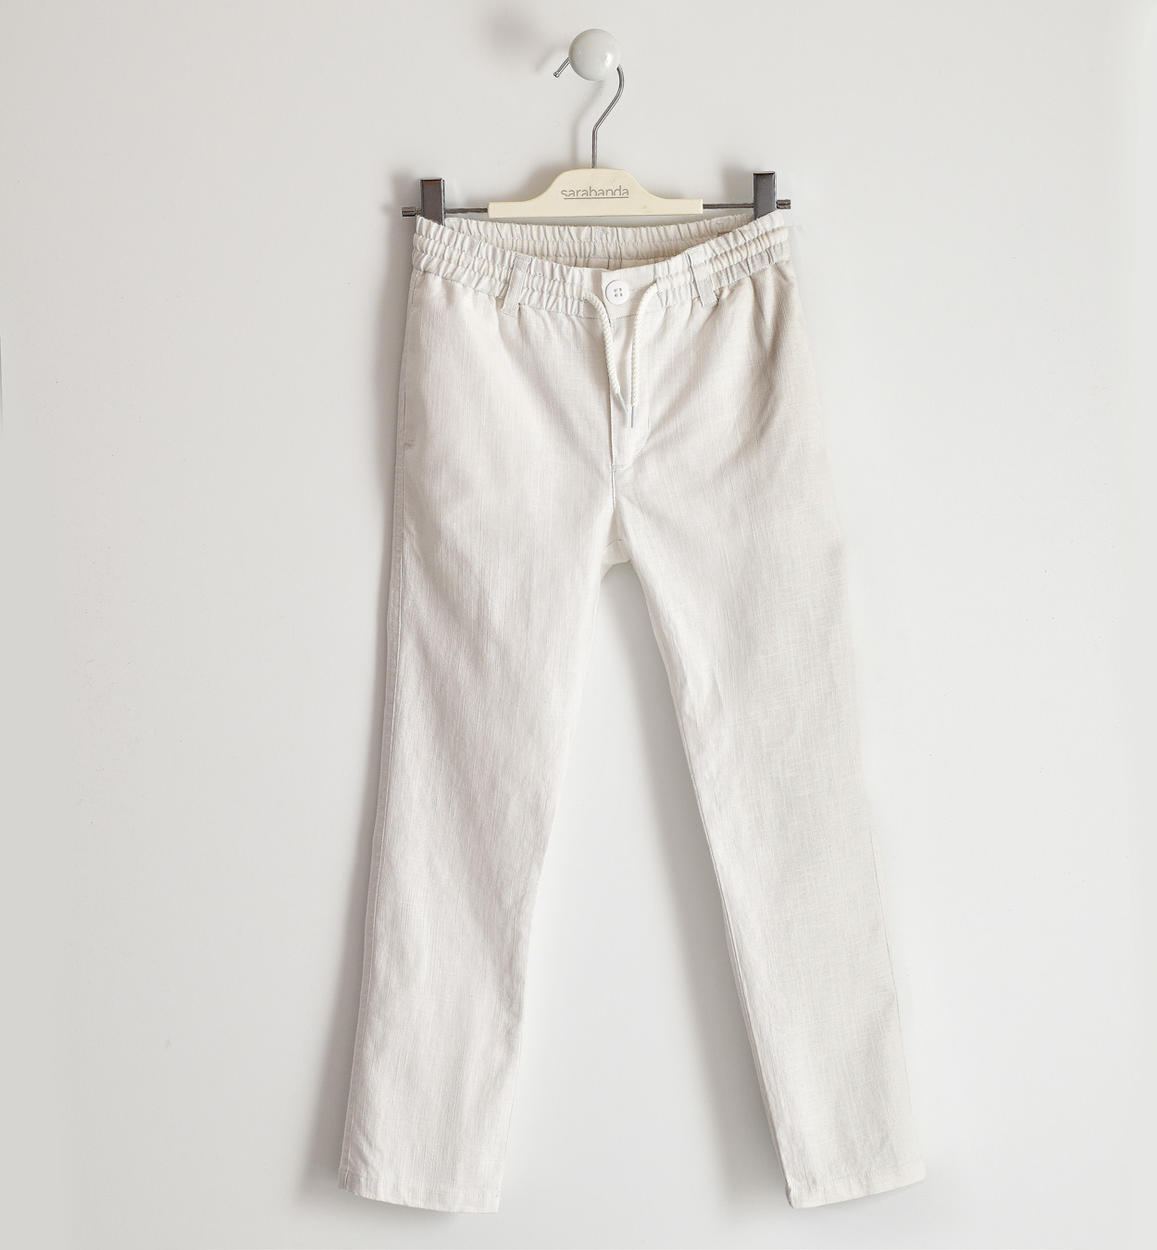 Pantalone lungo in lino e cotone BIANCO Sarabanda